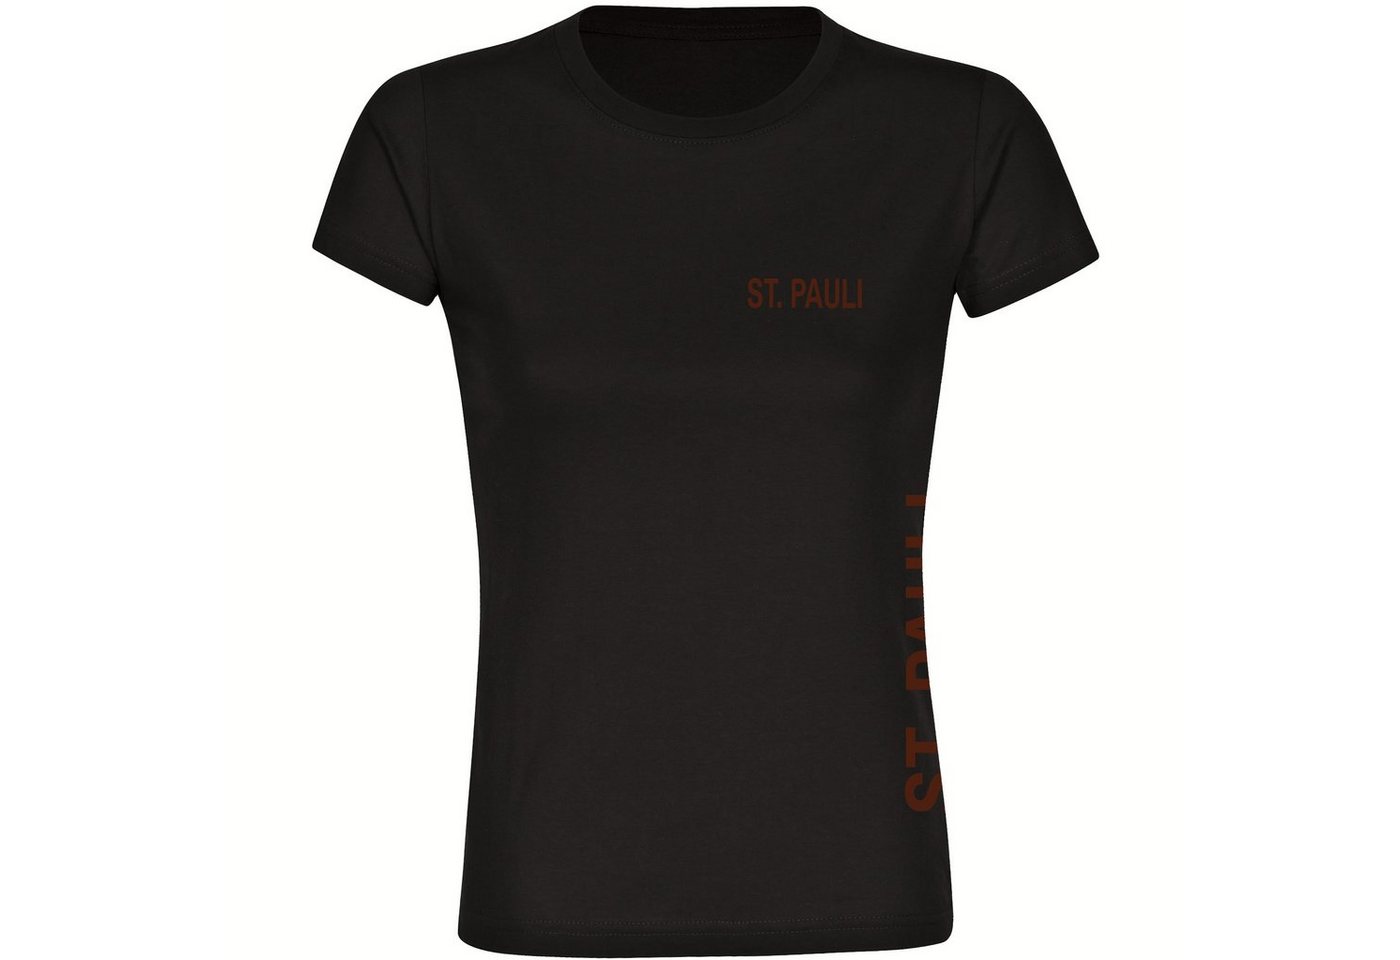 multifanshop T-Shirt Damen St. Pauli - Brust & Seite - Frauen von multifanshop